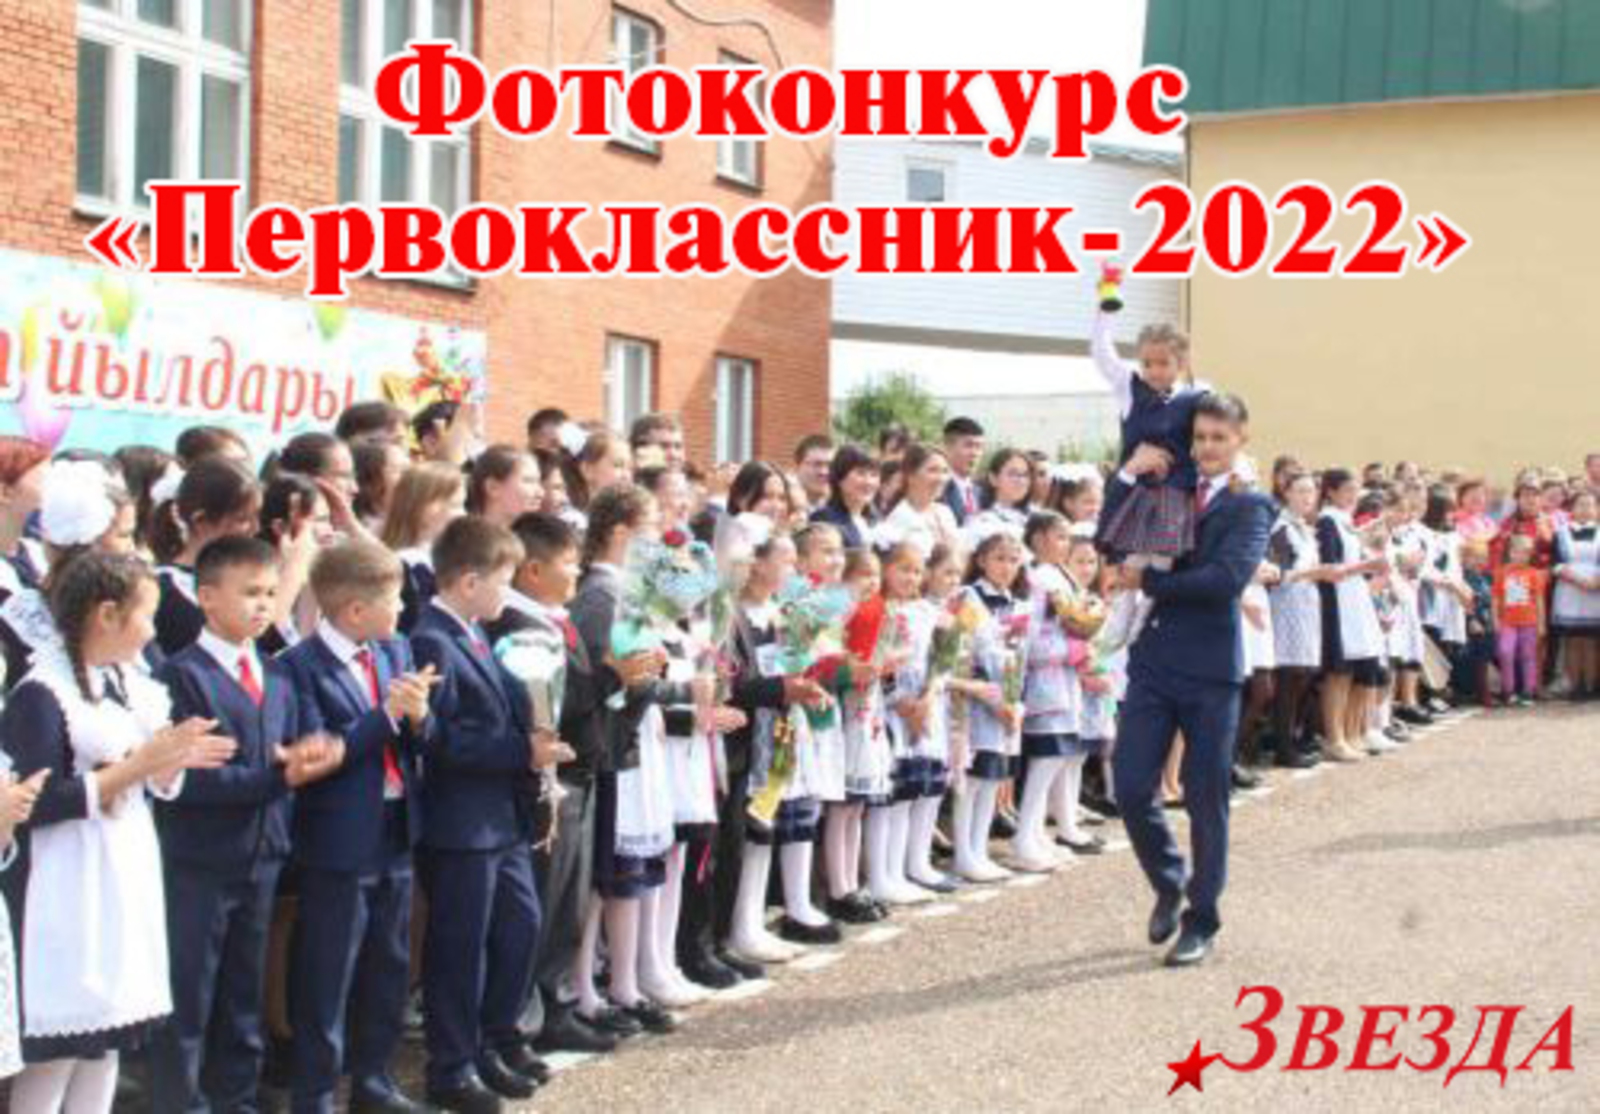 ВНИМАНИЕ, РЕСПУБЛИКАНСКИЙ ФОТОКОНКУРС "ПЕРВОКЛАССНИК-2022"!